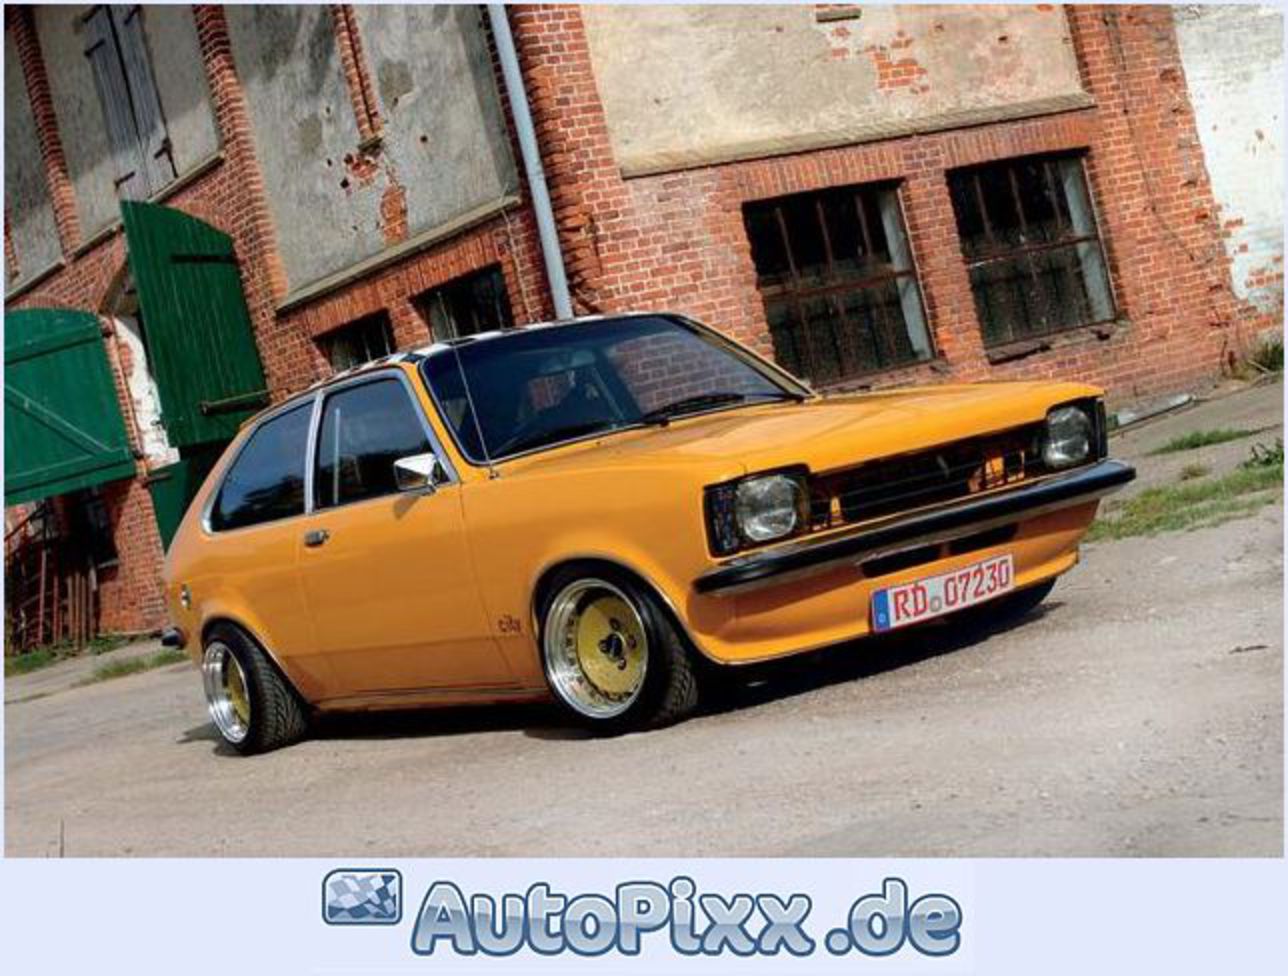 Opel Kadett C City. 1 mal bewertet (Ã¸ 5,0): Ohne Bewertung weiter: 1